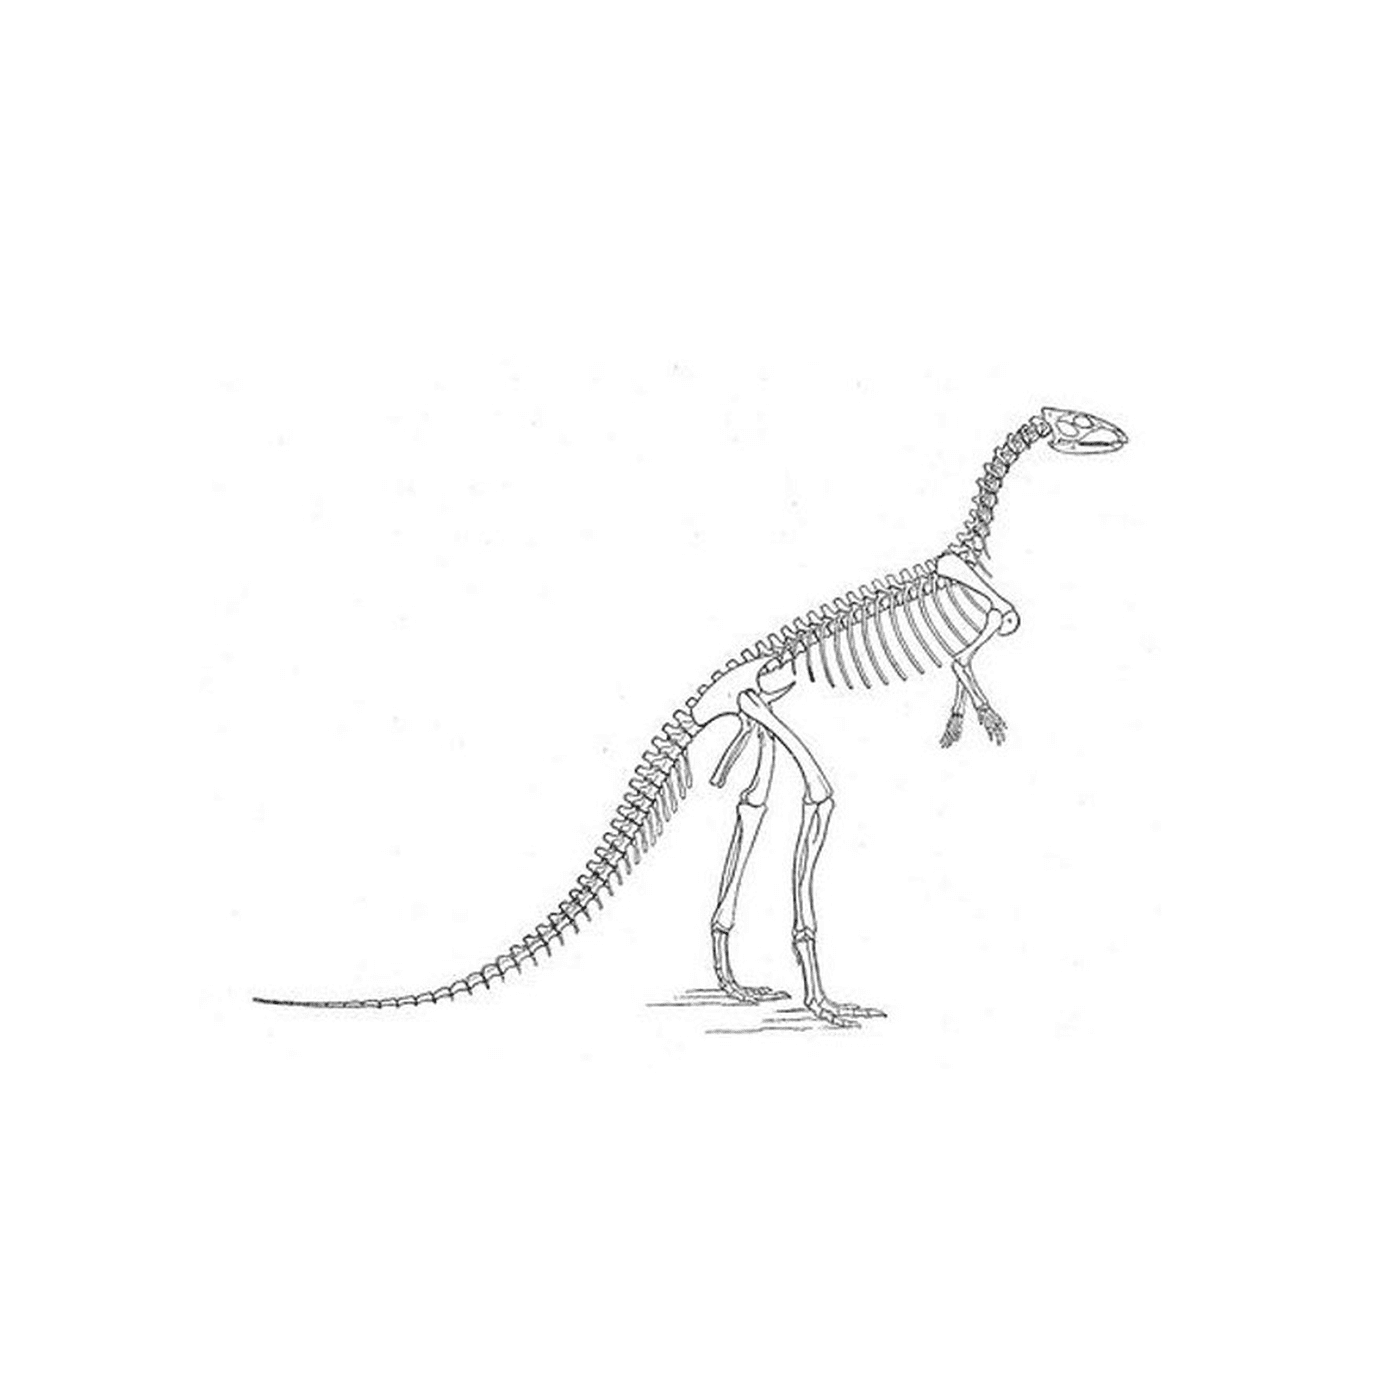  Uno scheletro di dinosauro 